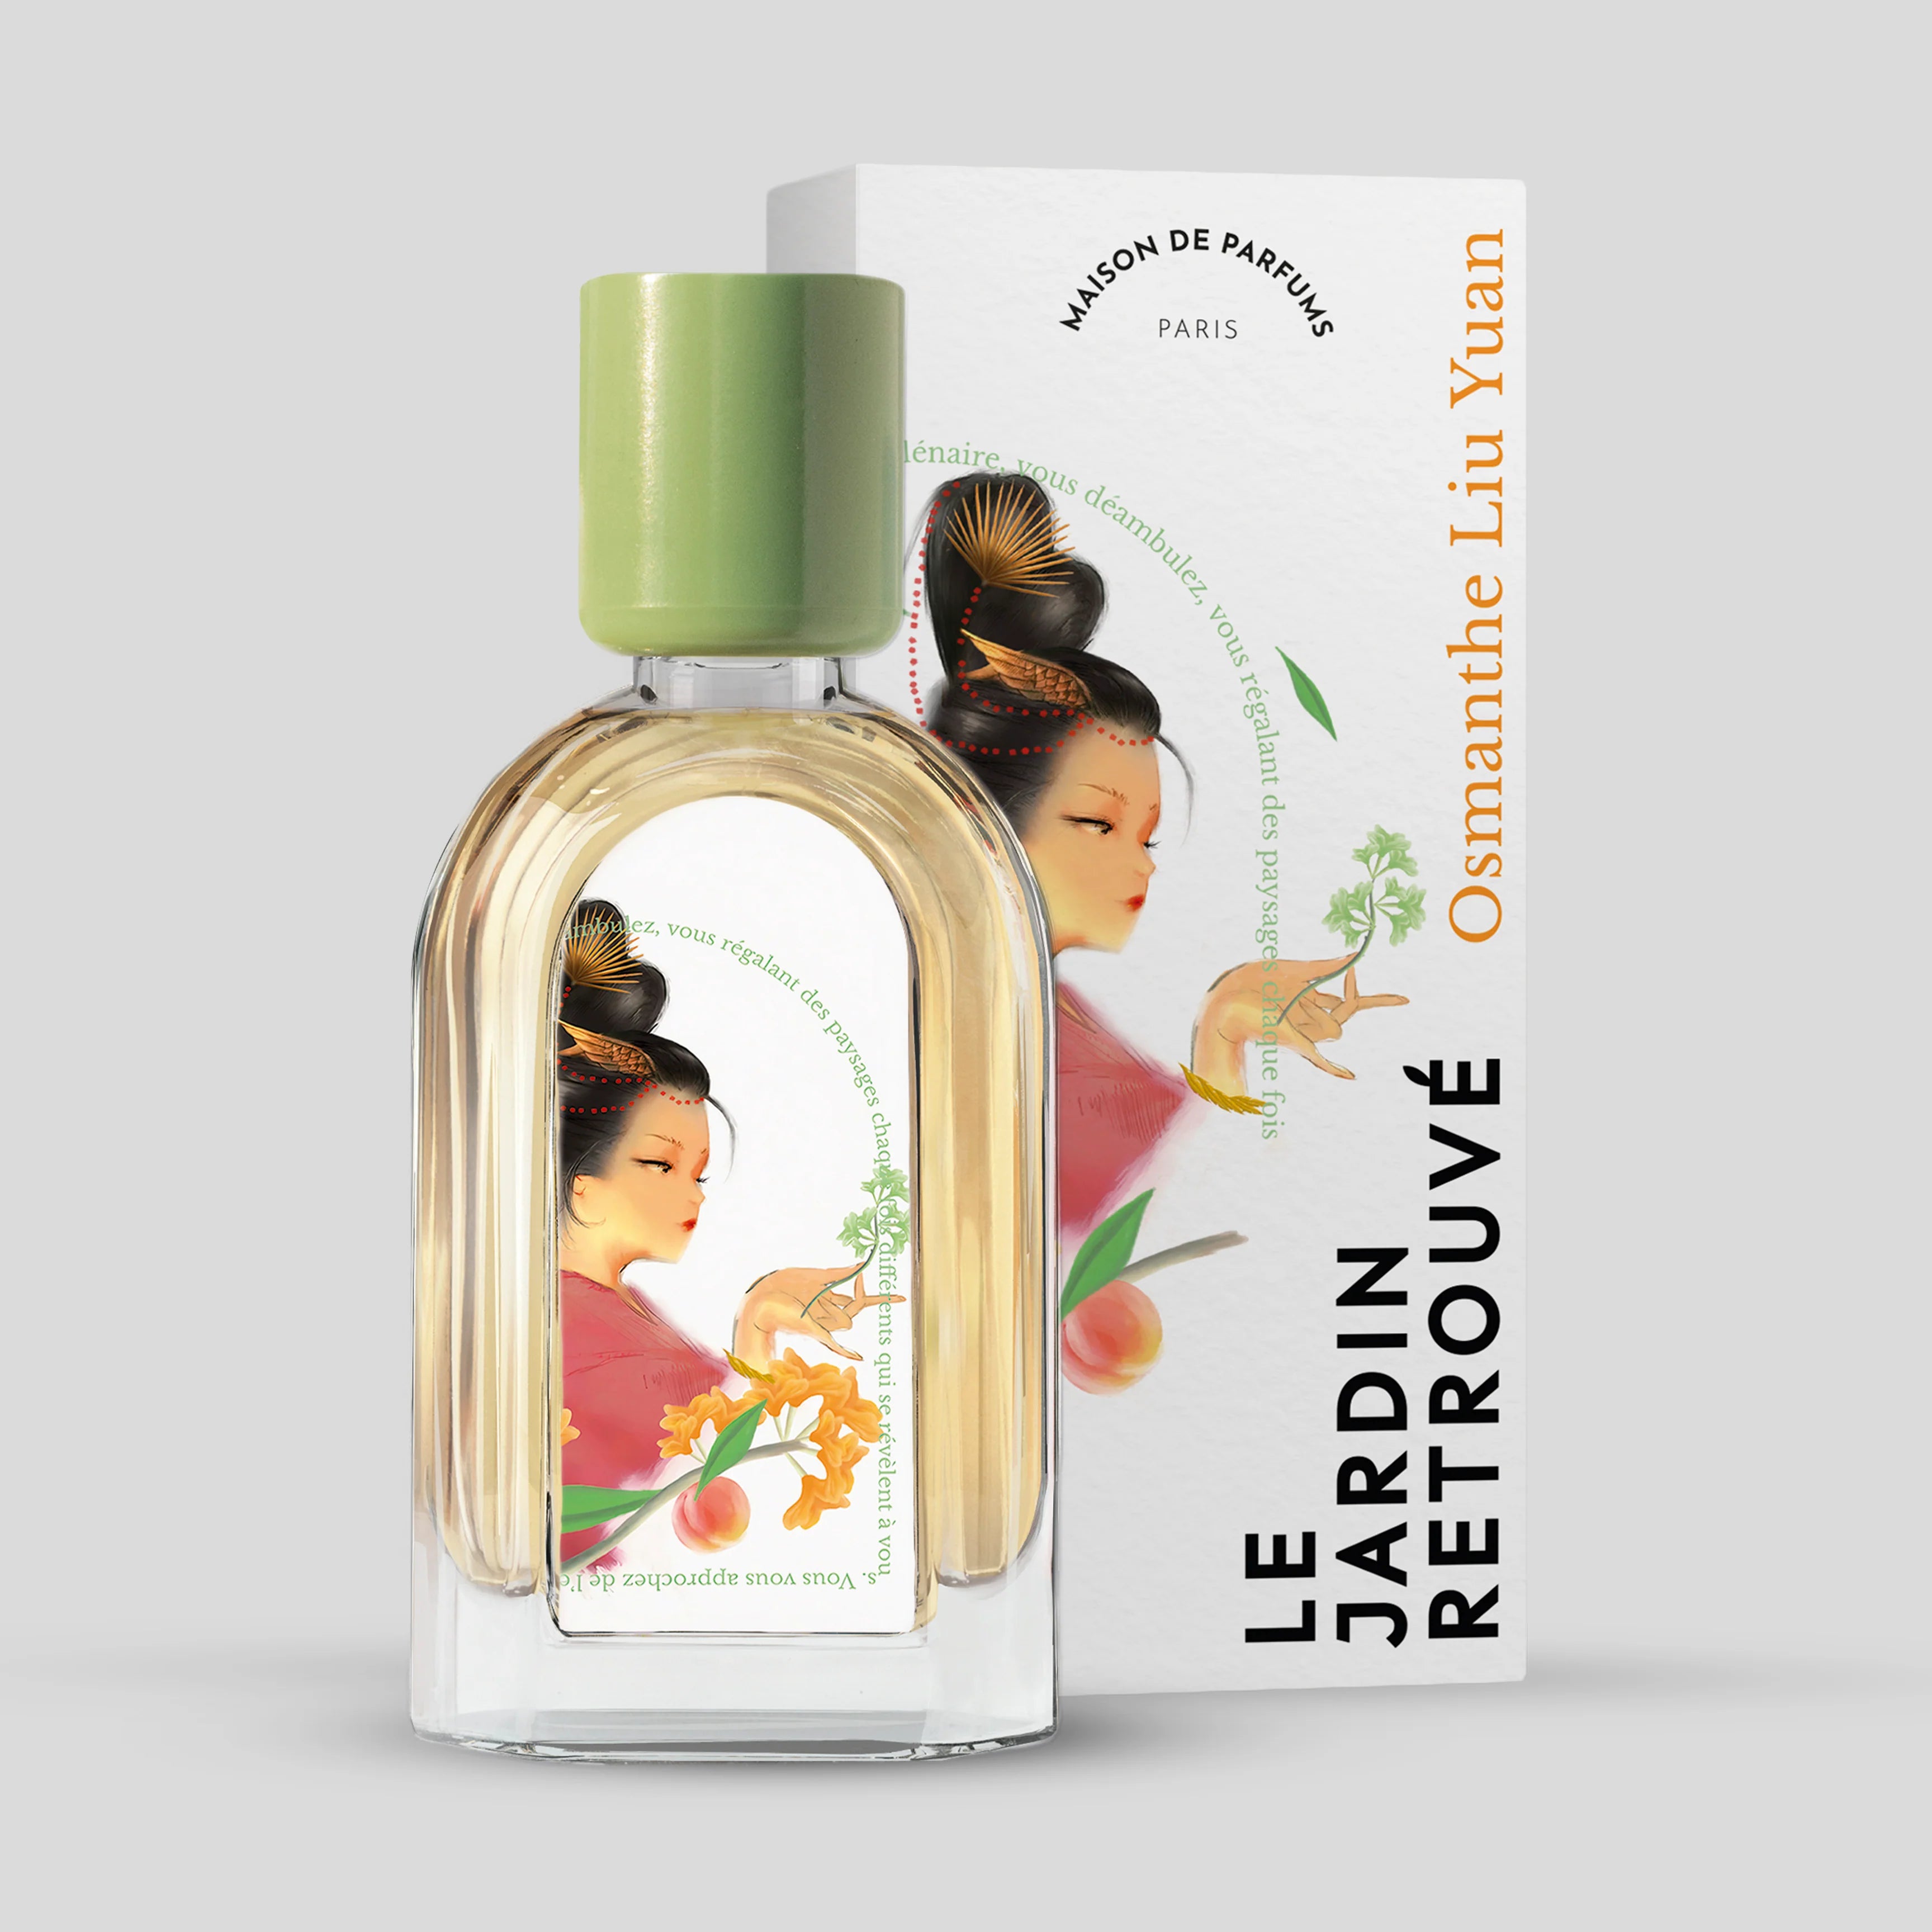 Osmanthe Liu Yuan Eau de Parfum 50ml Bottle and Box by Le Jardin Retrouvé